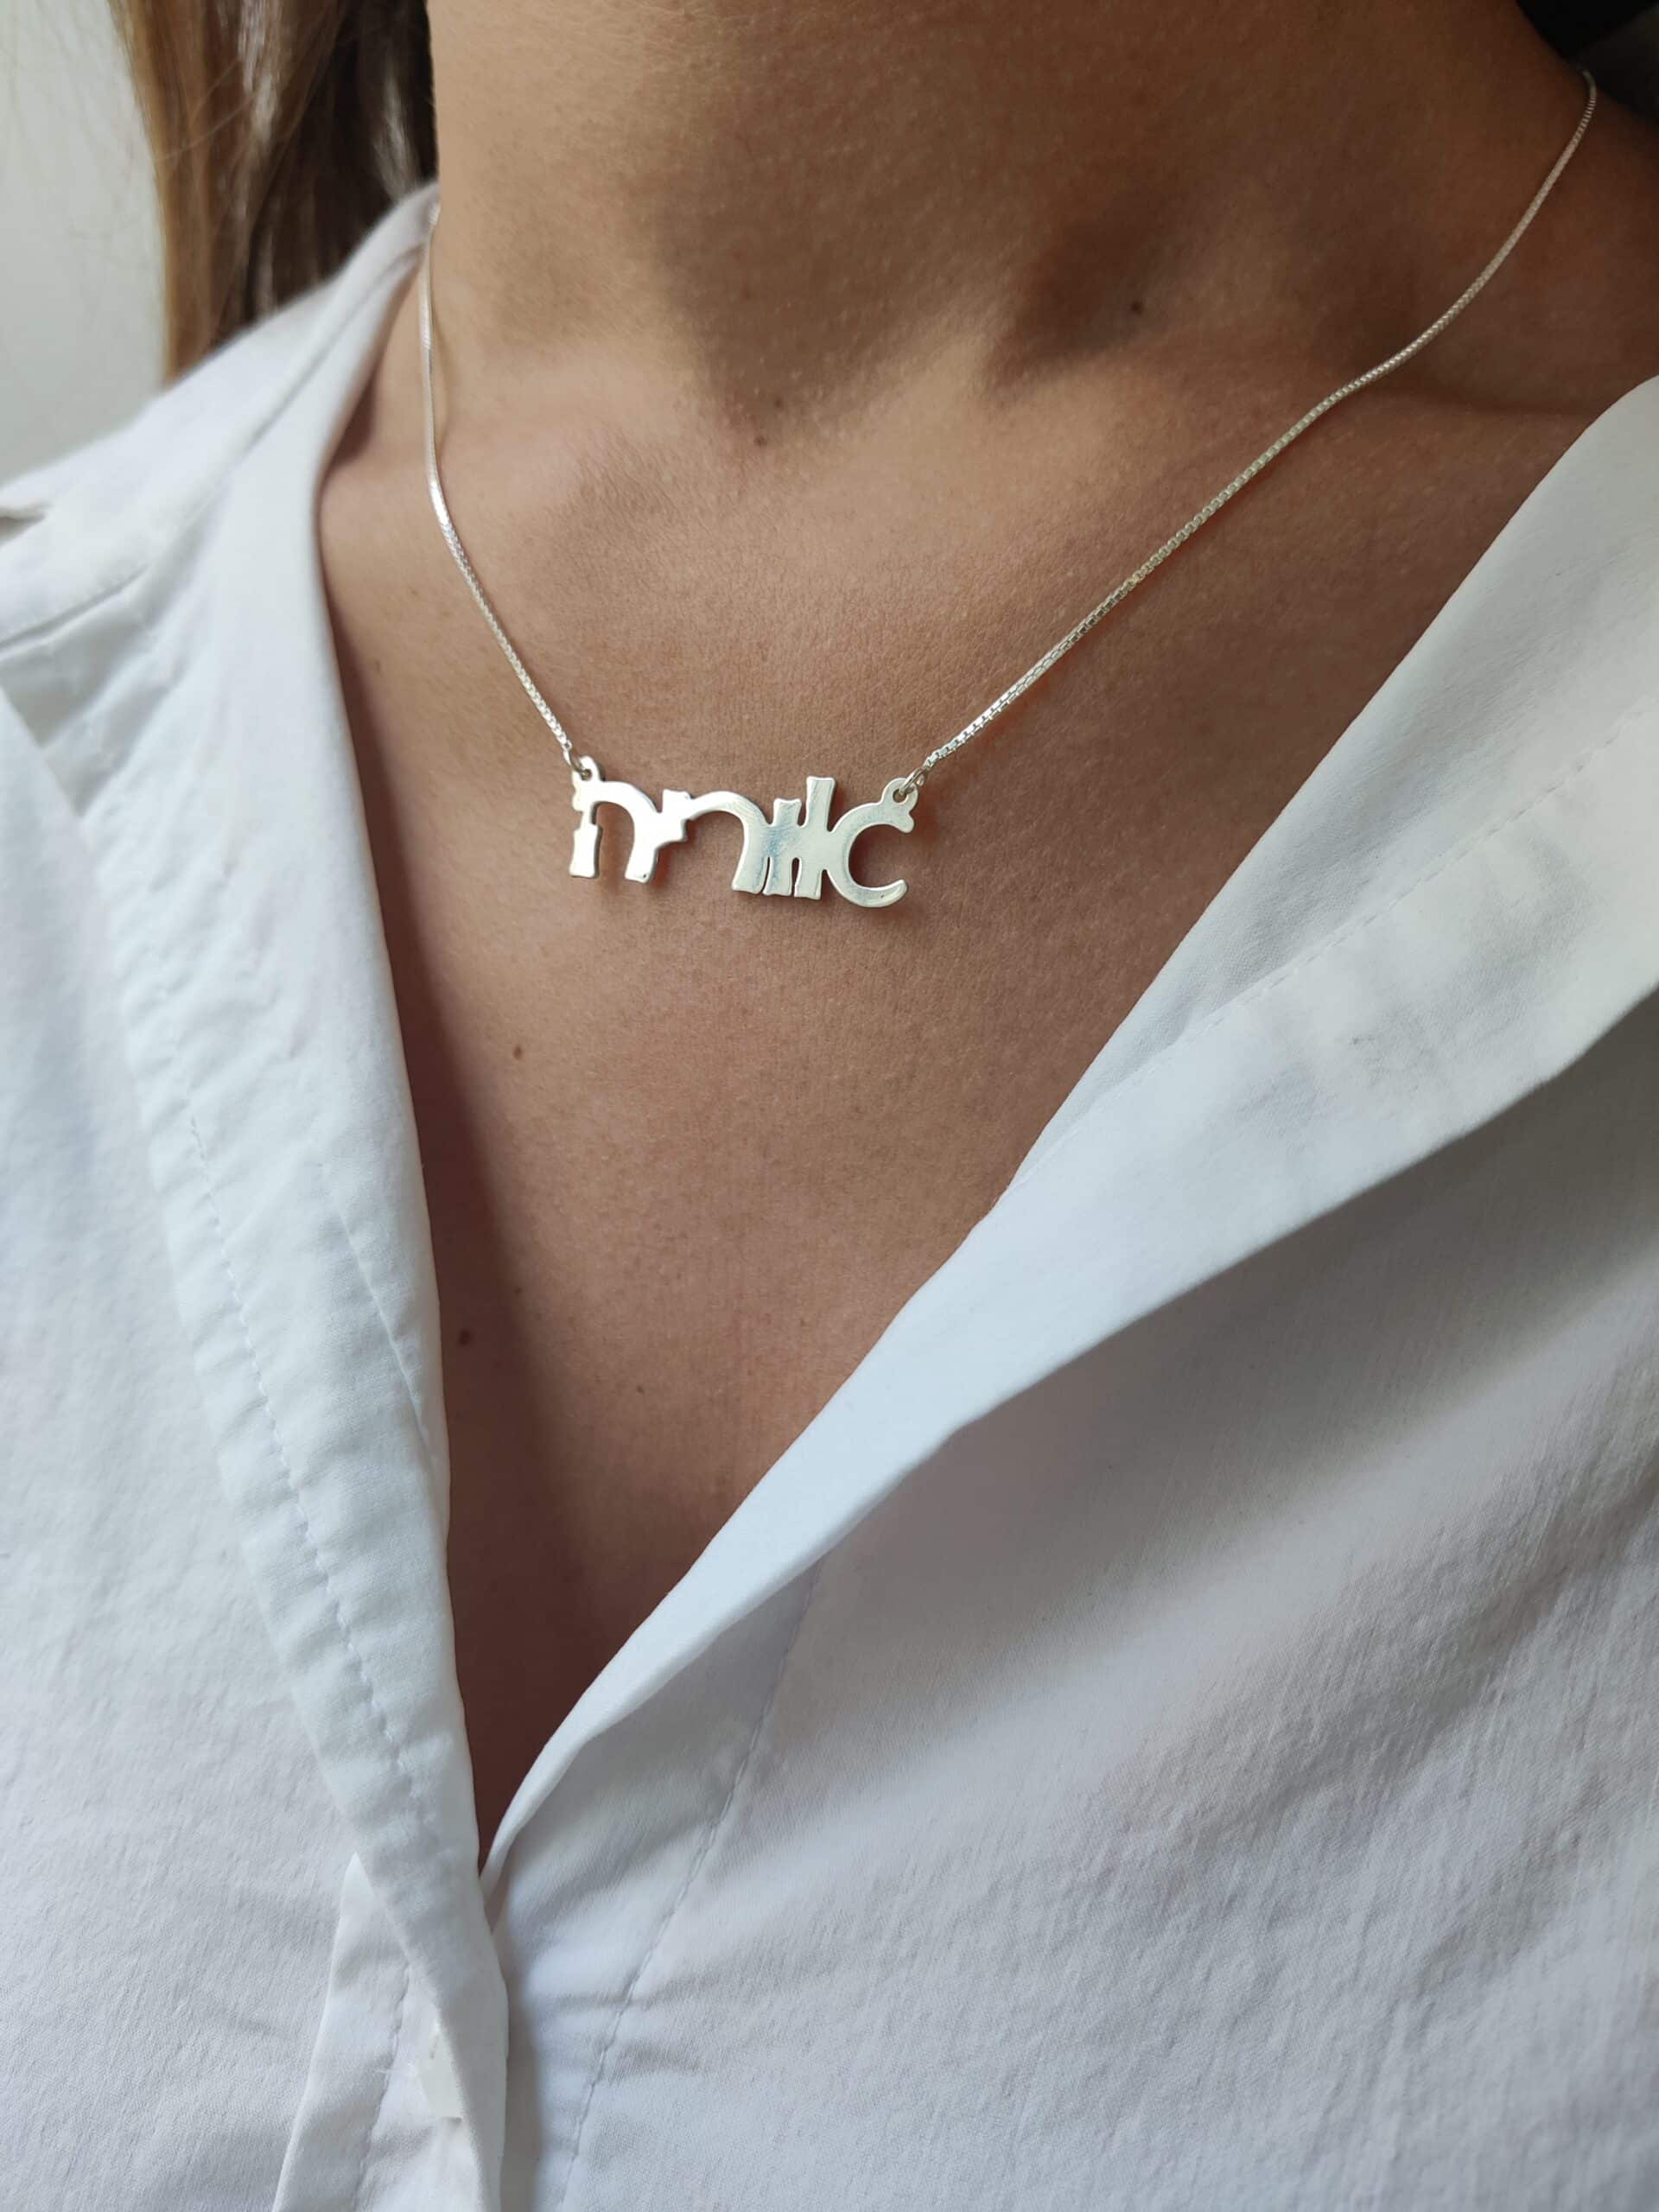 Hebrew Name Necklaces